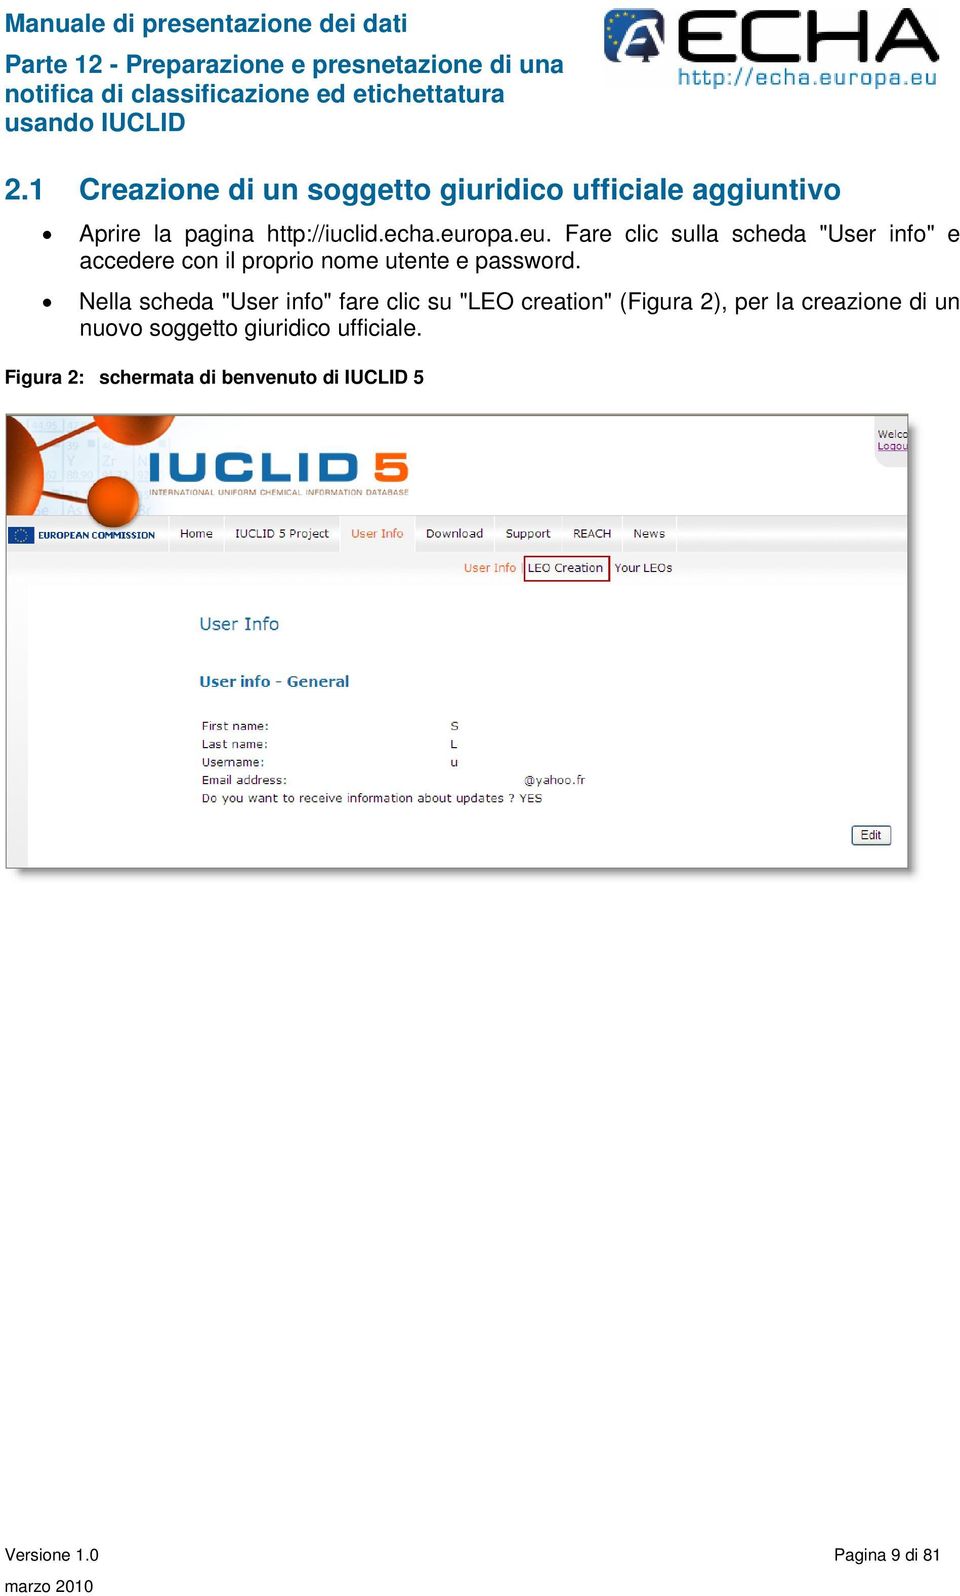 Nella scheda "User info" fare clic su "LEO creation" (Figura 2), per la creazione di un nuovo